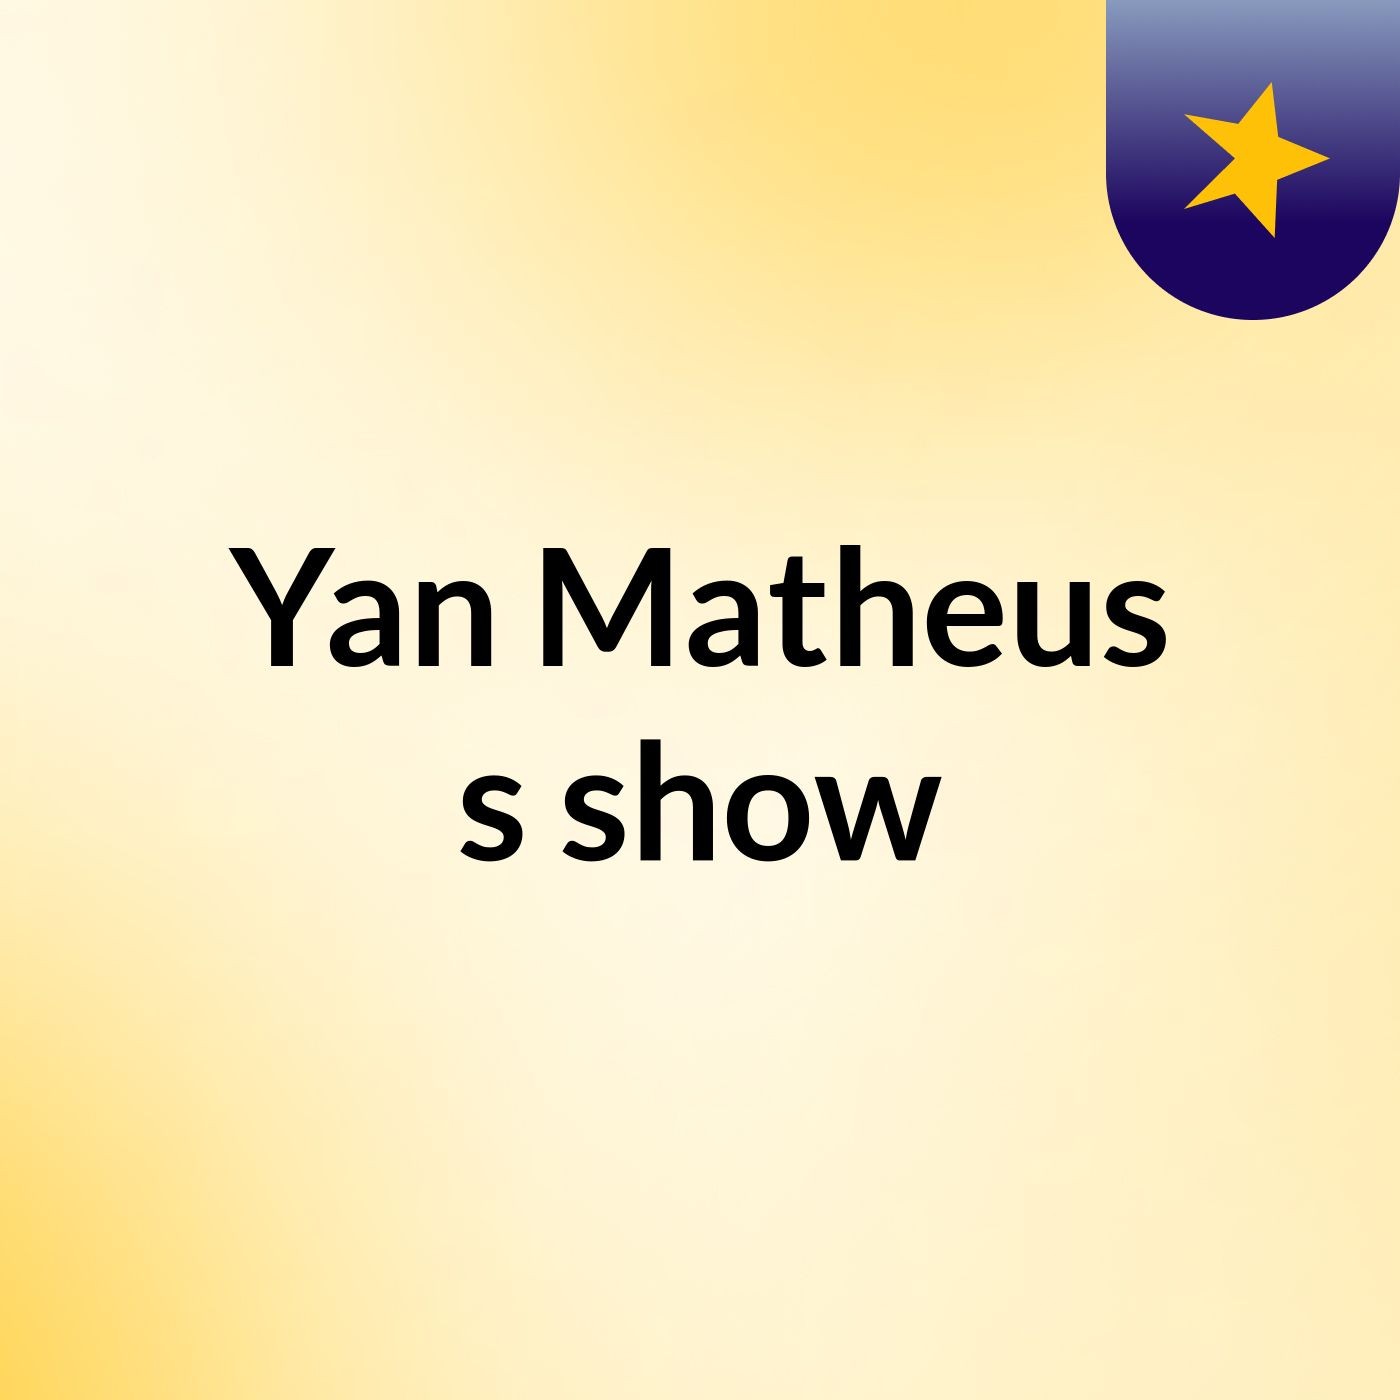 Yan Matheus's show